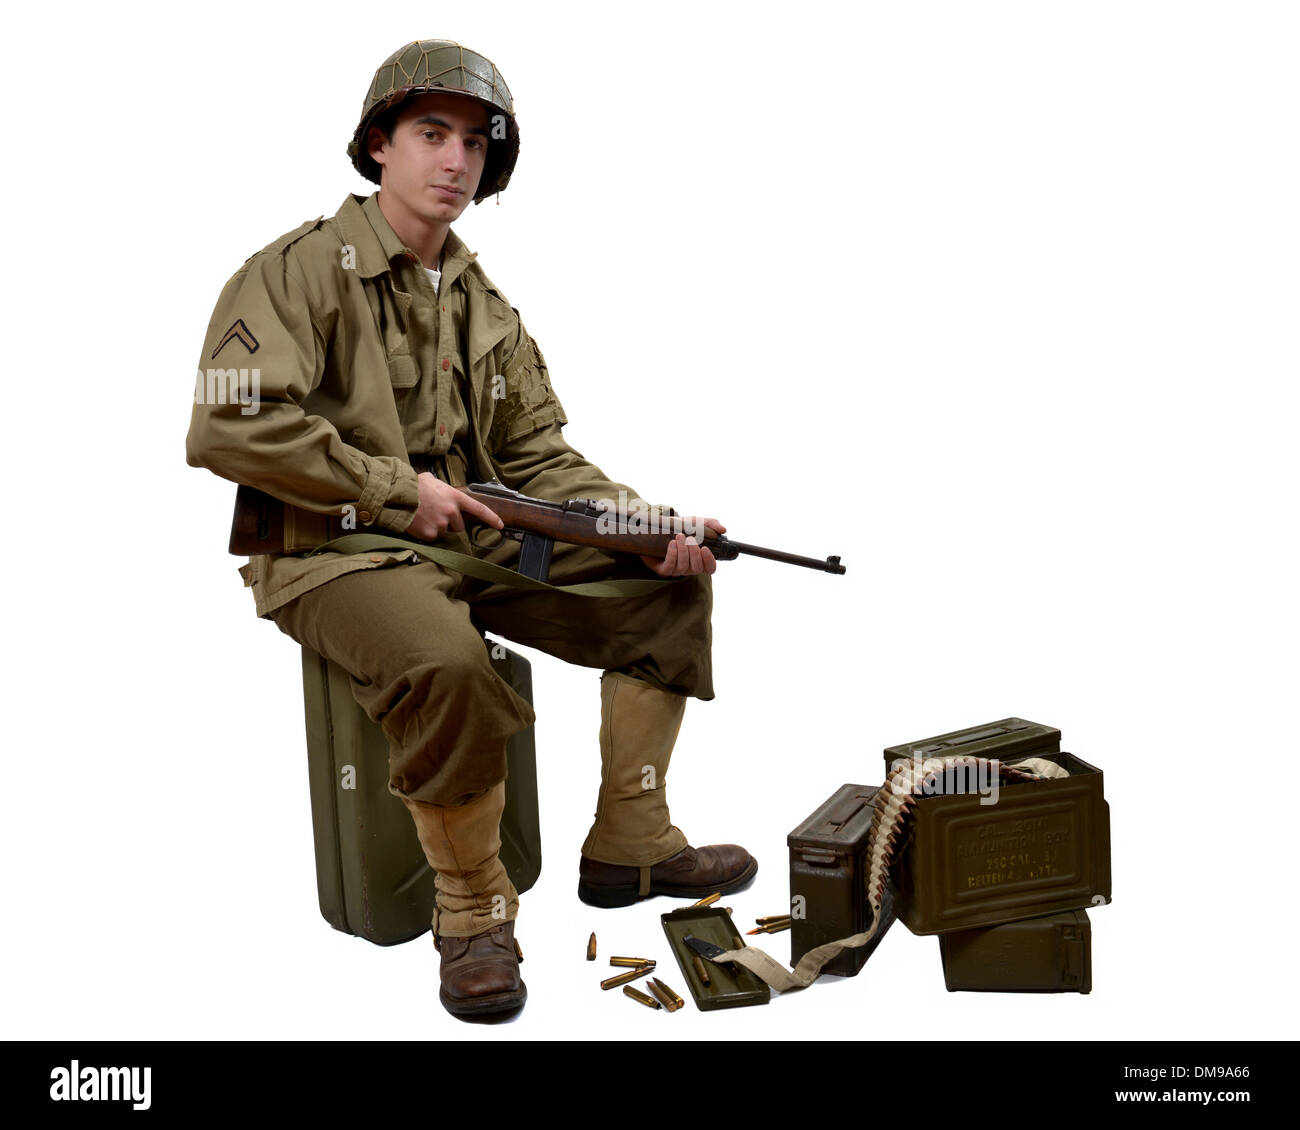 Jeune soldat américain avec sa carabine M1 assis sur un bidon Banque D'Images